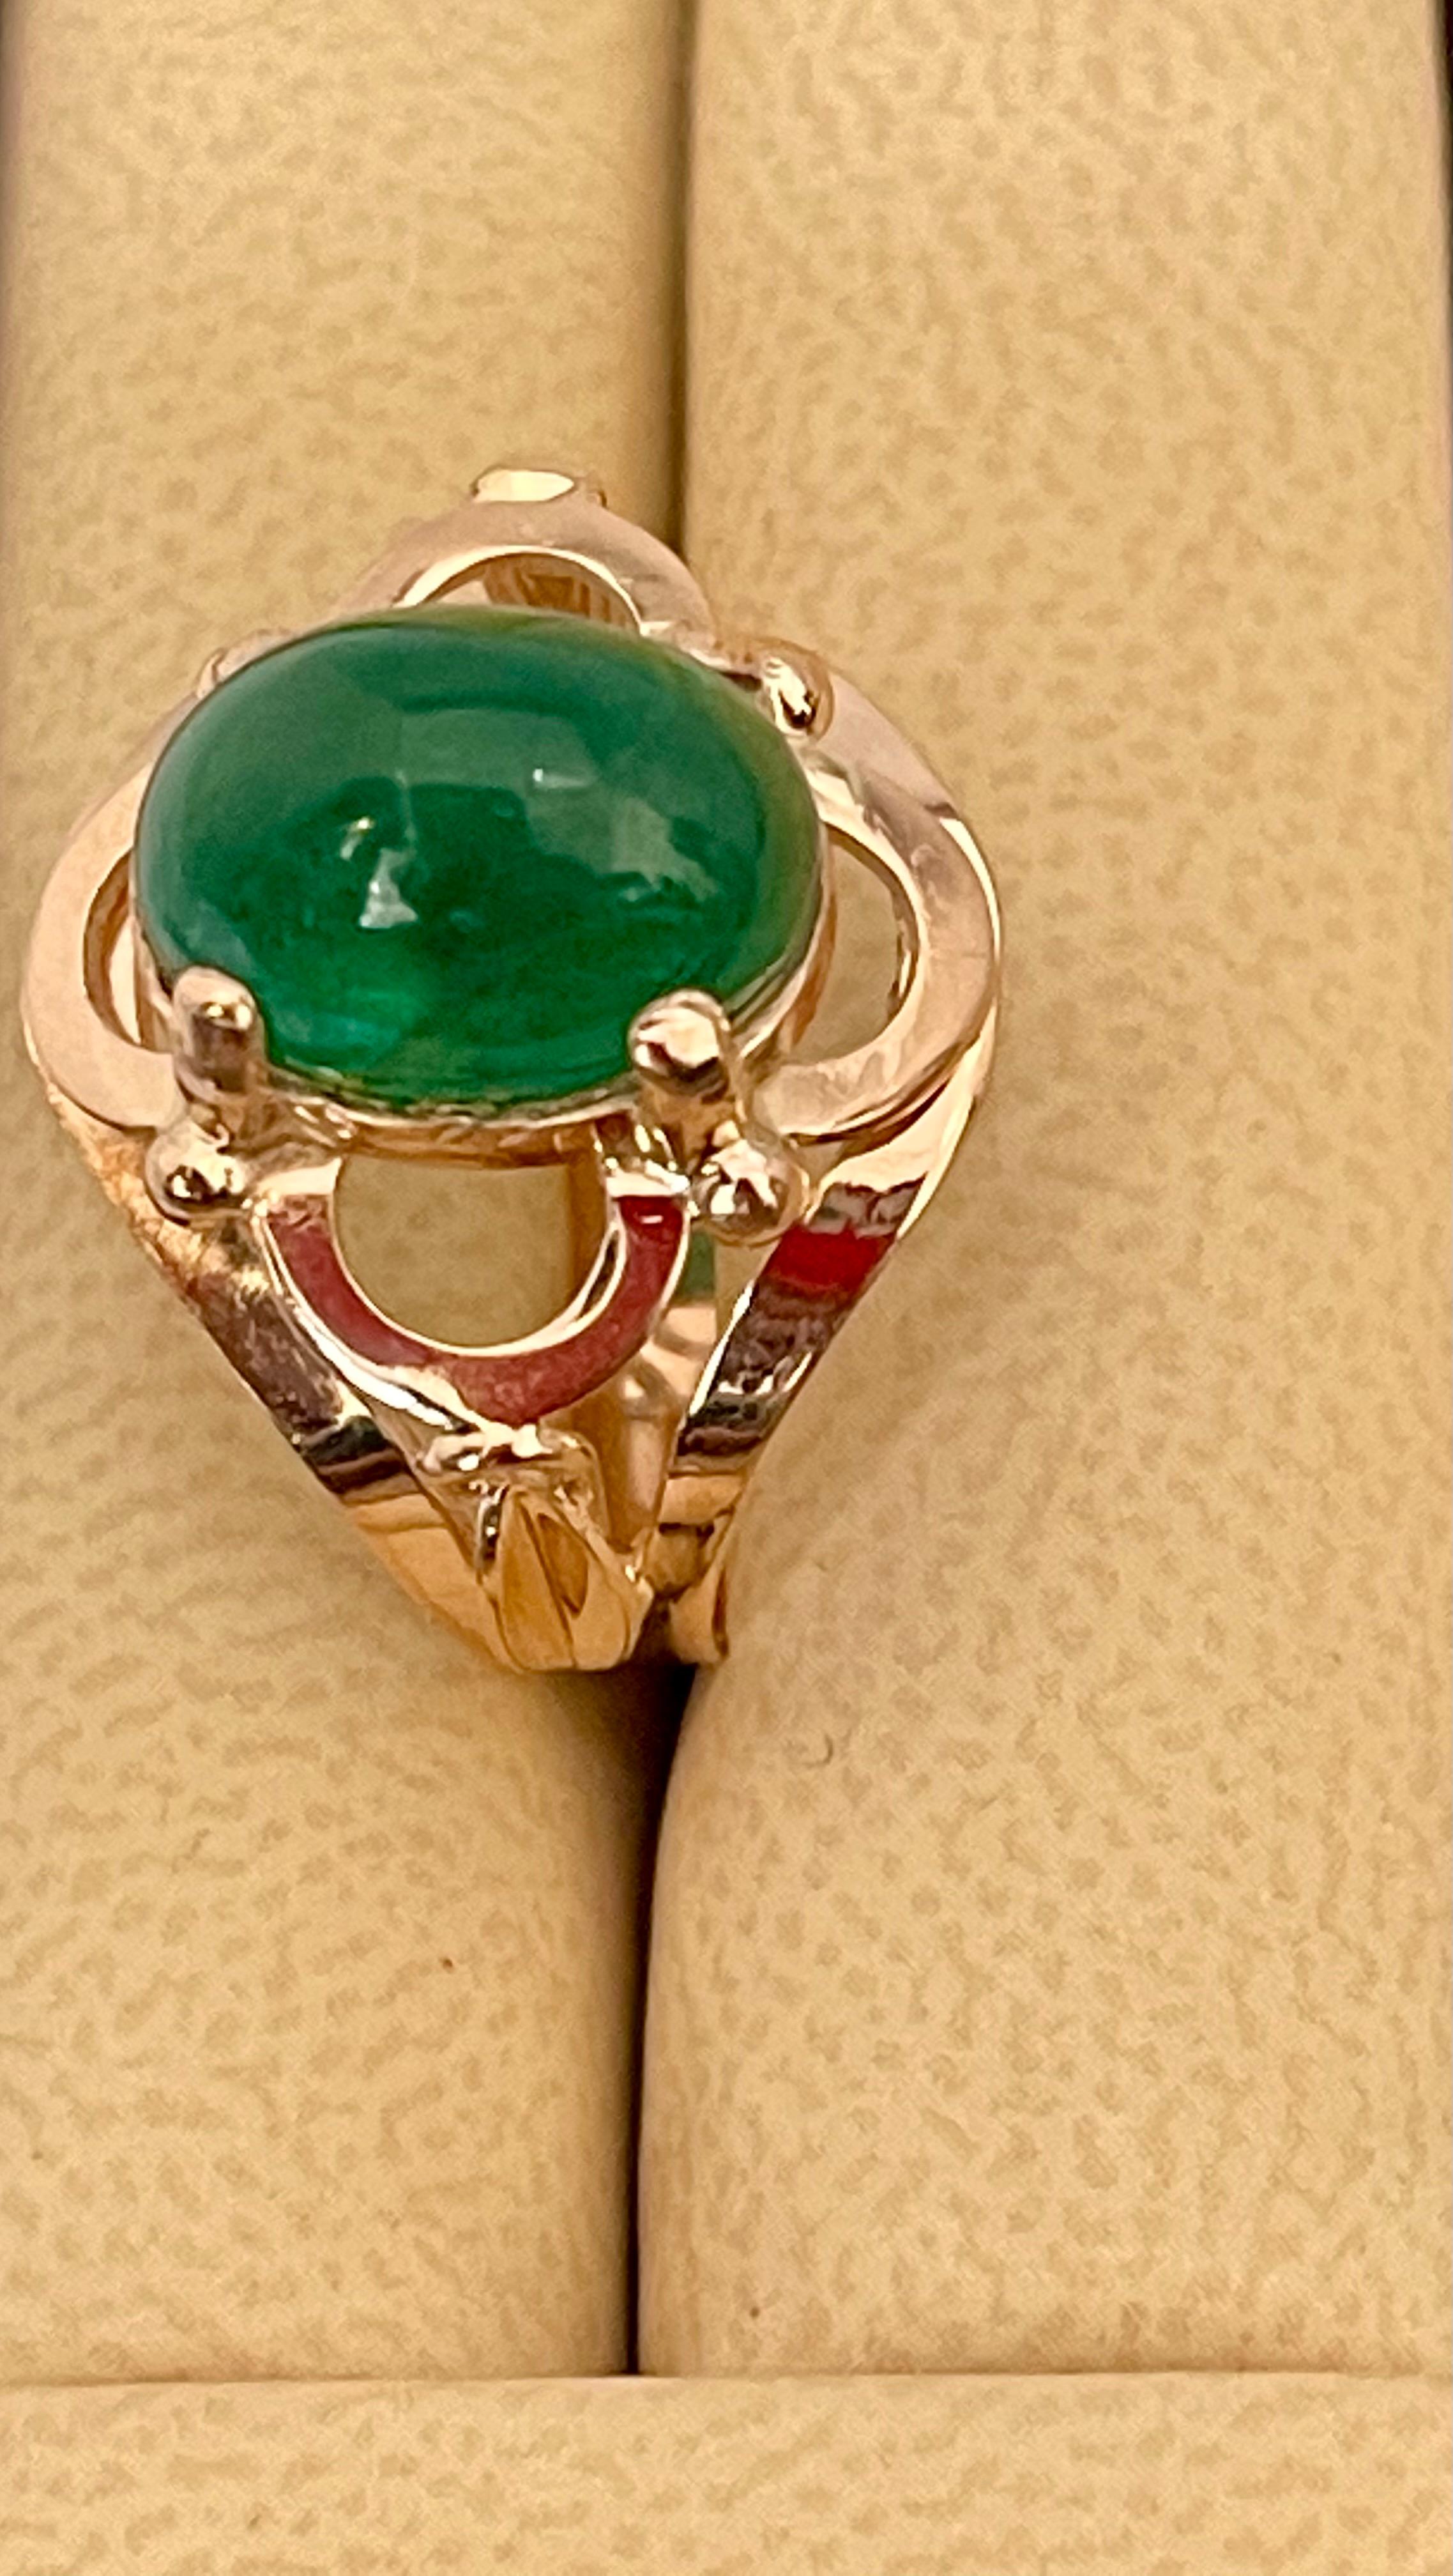 Ein klassischer Cocktail-Ring 
Großformat Smaragd  Cabochon ca. 6.2 Karat Smaragd , Estate mit keine Farbverbesserung. 
Gold: 14 Karat Rose   Gold ,
Gewicht: 5,7  Gramm mit Stein 
schlichter Ring, kein Klunker 
Smaragd: 6,2 Karat 
Herkunft: